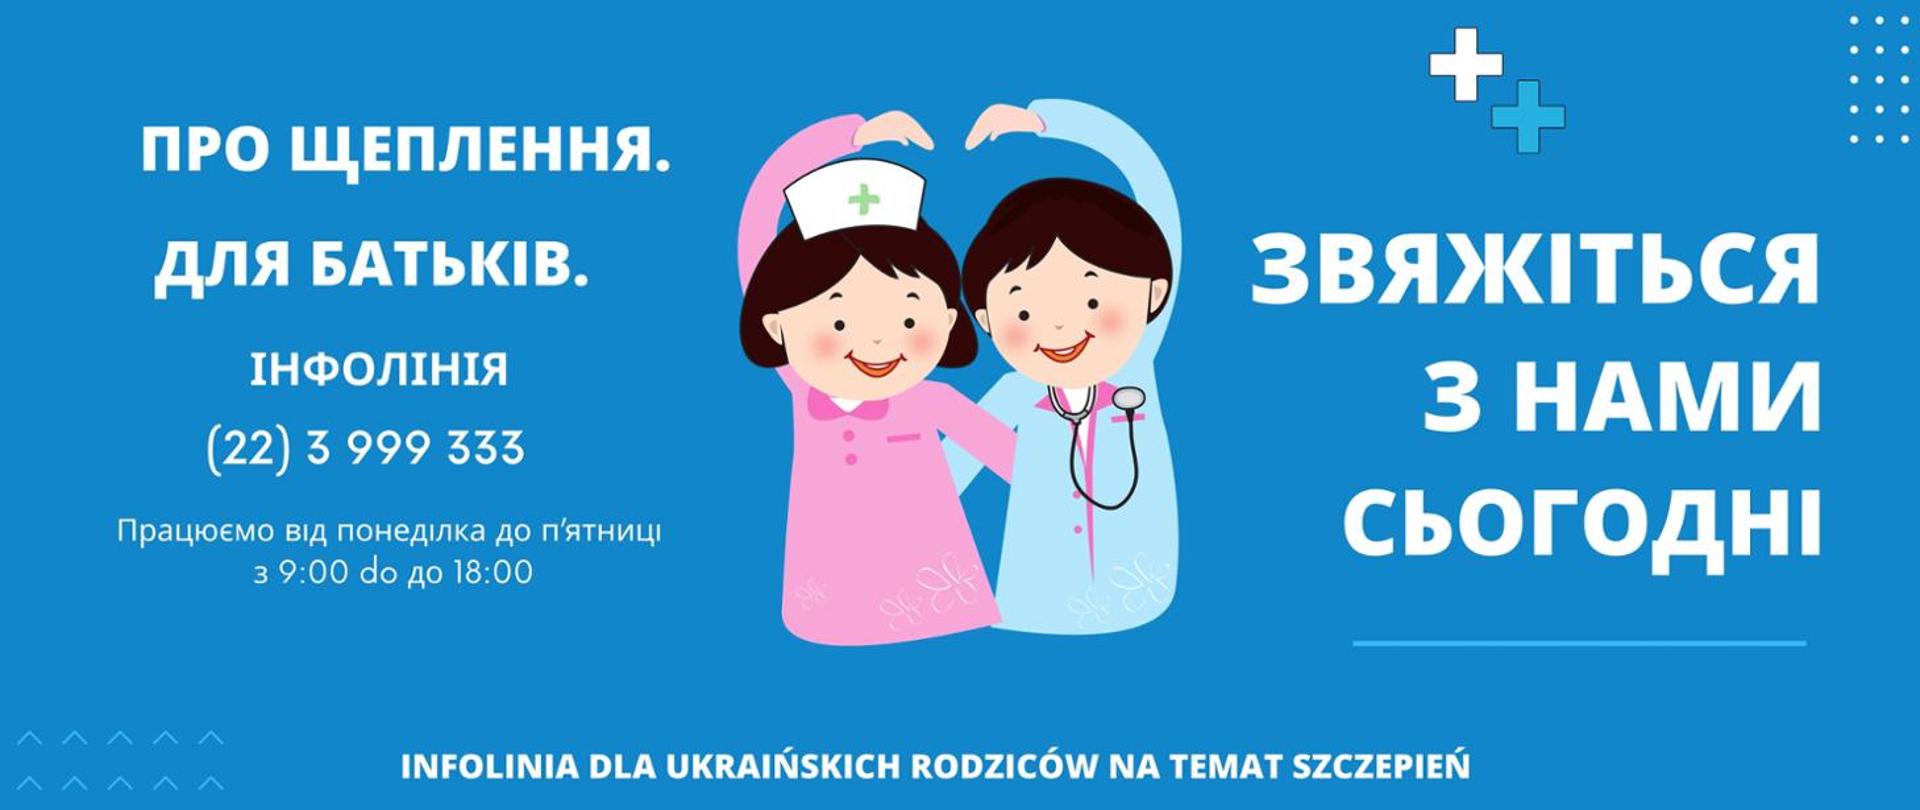 Infolinia dla ukraińskich rodziców nt szczepień